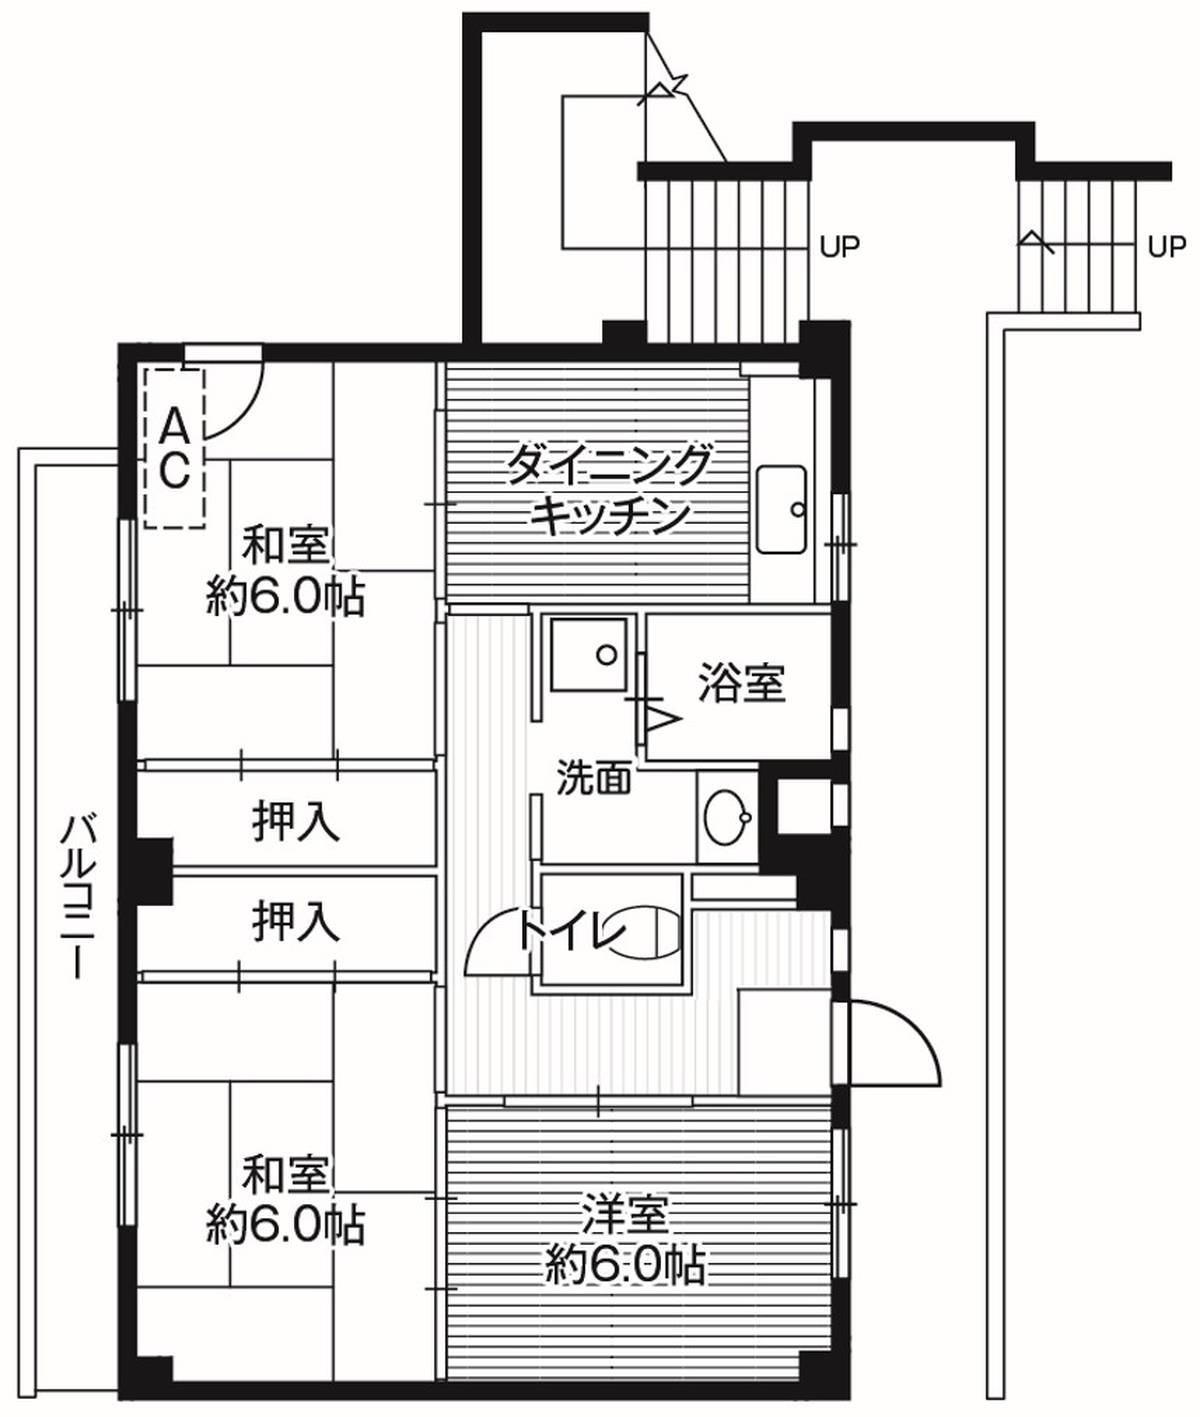 3DK floorplan of Village House Taya in Fukaya-shi